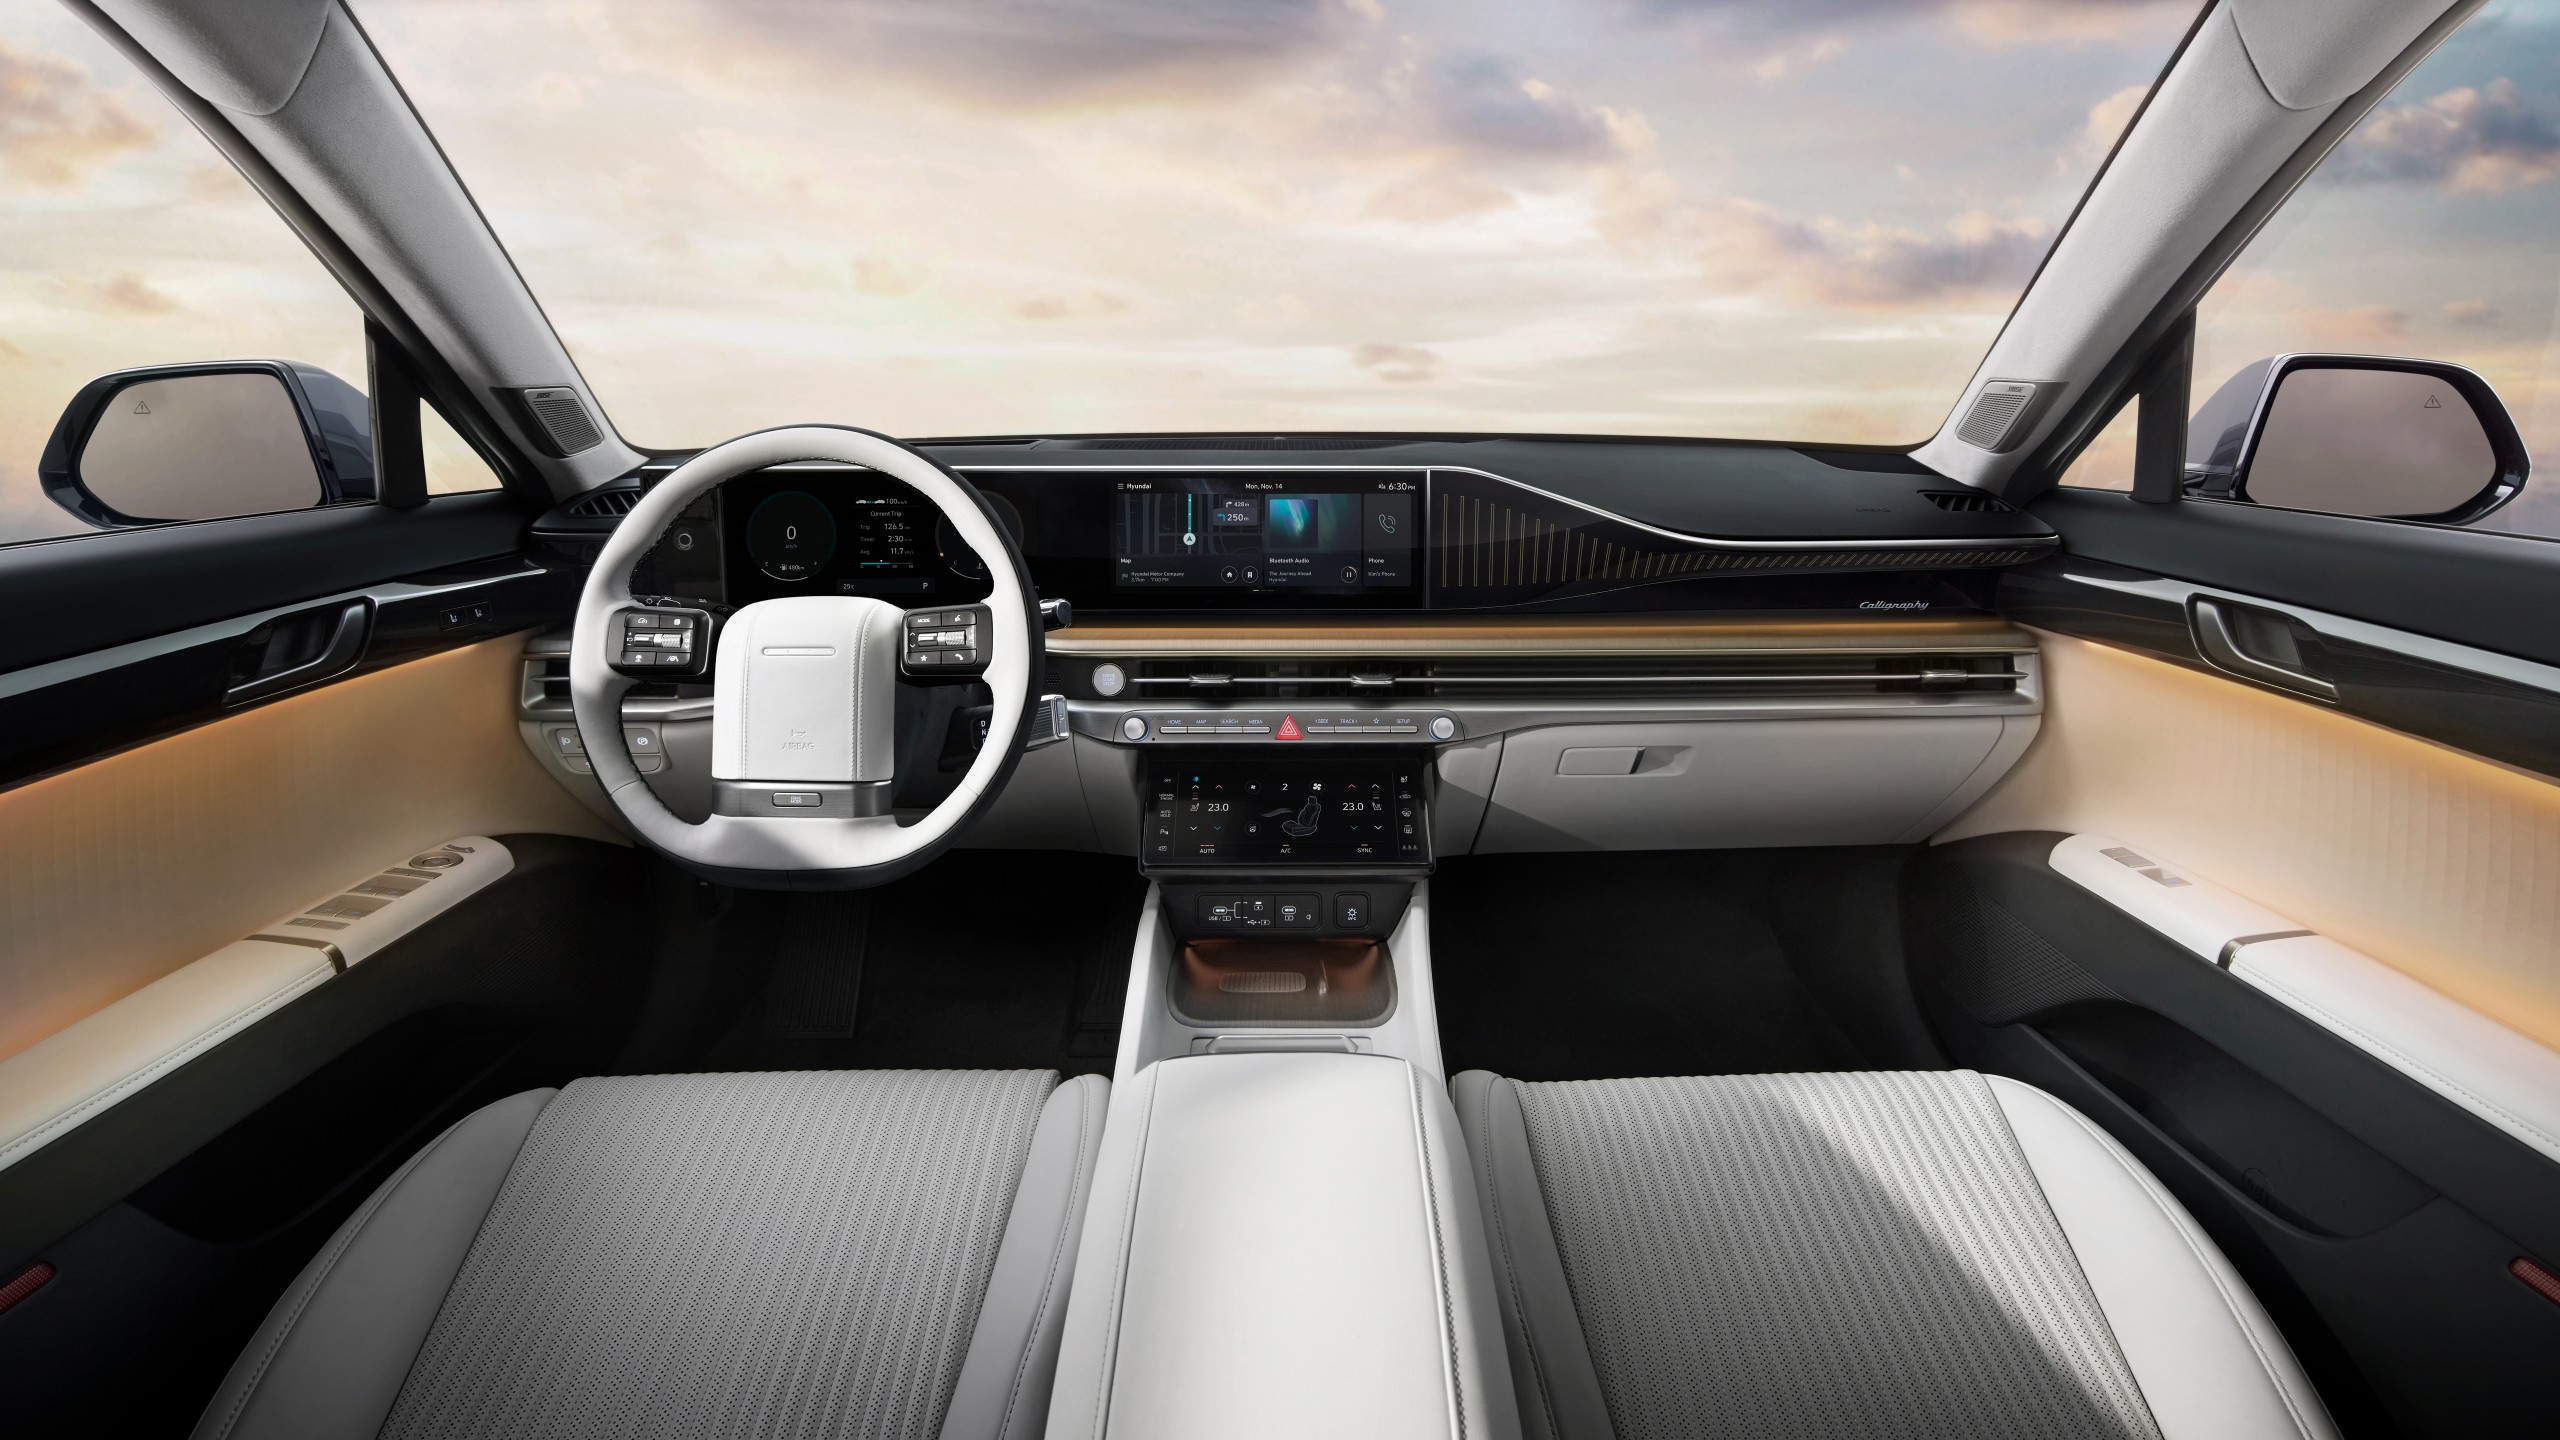 Hyundai Grandeur interior - Cockpit